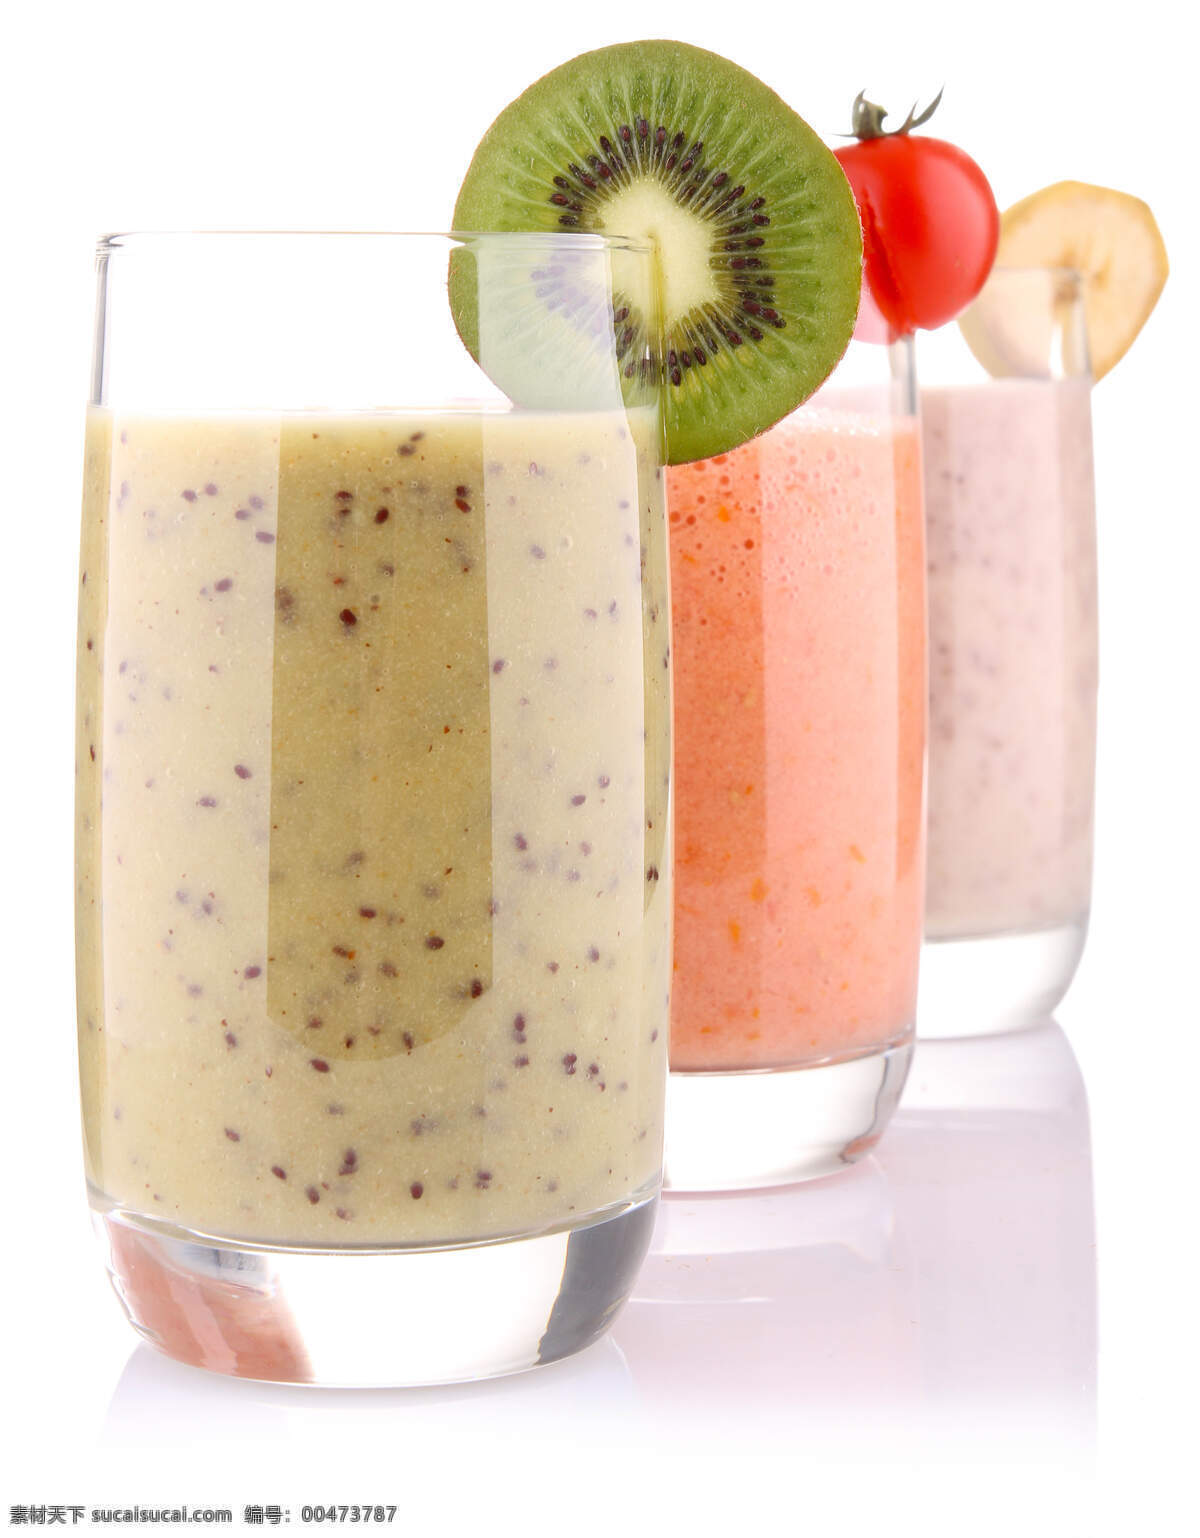 三杯果汁 水果果汁 水果 杯子 玻璃杯子 果蔬 休闲饮品 健康食品 酒水饮料 餐饮美食 白色